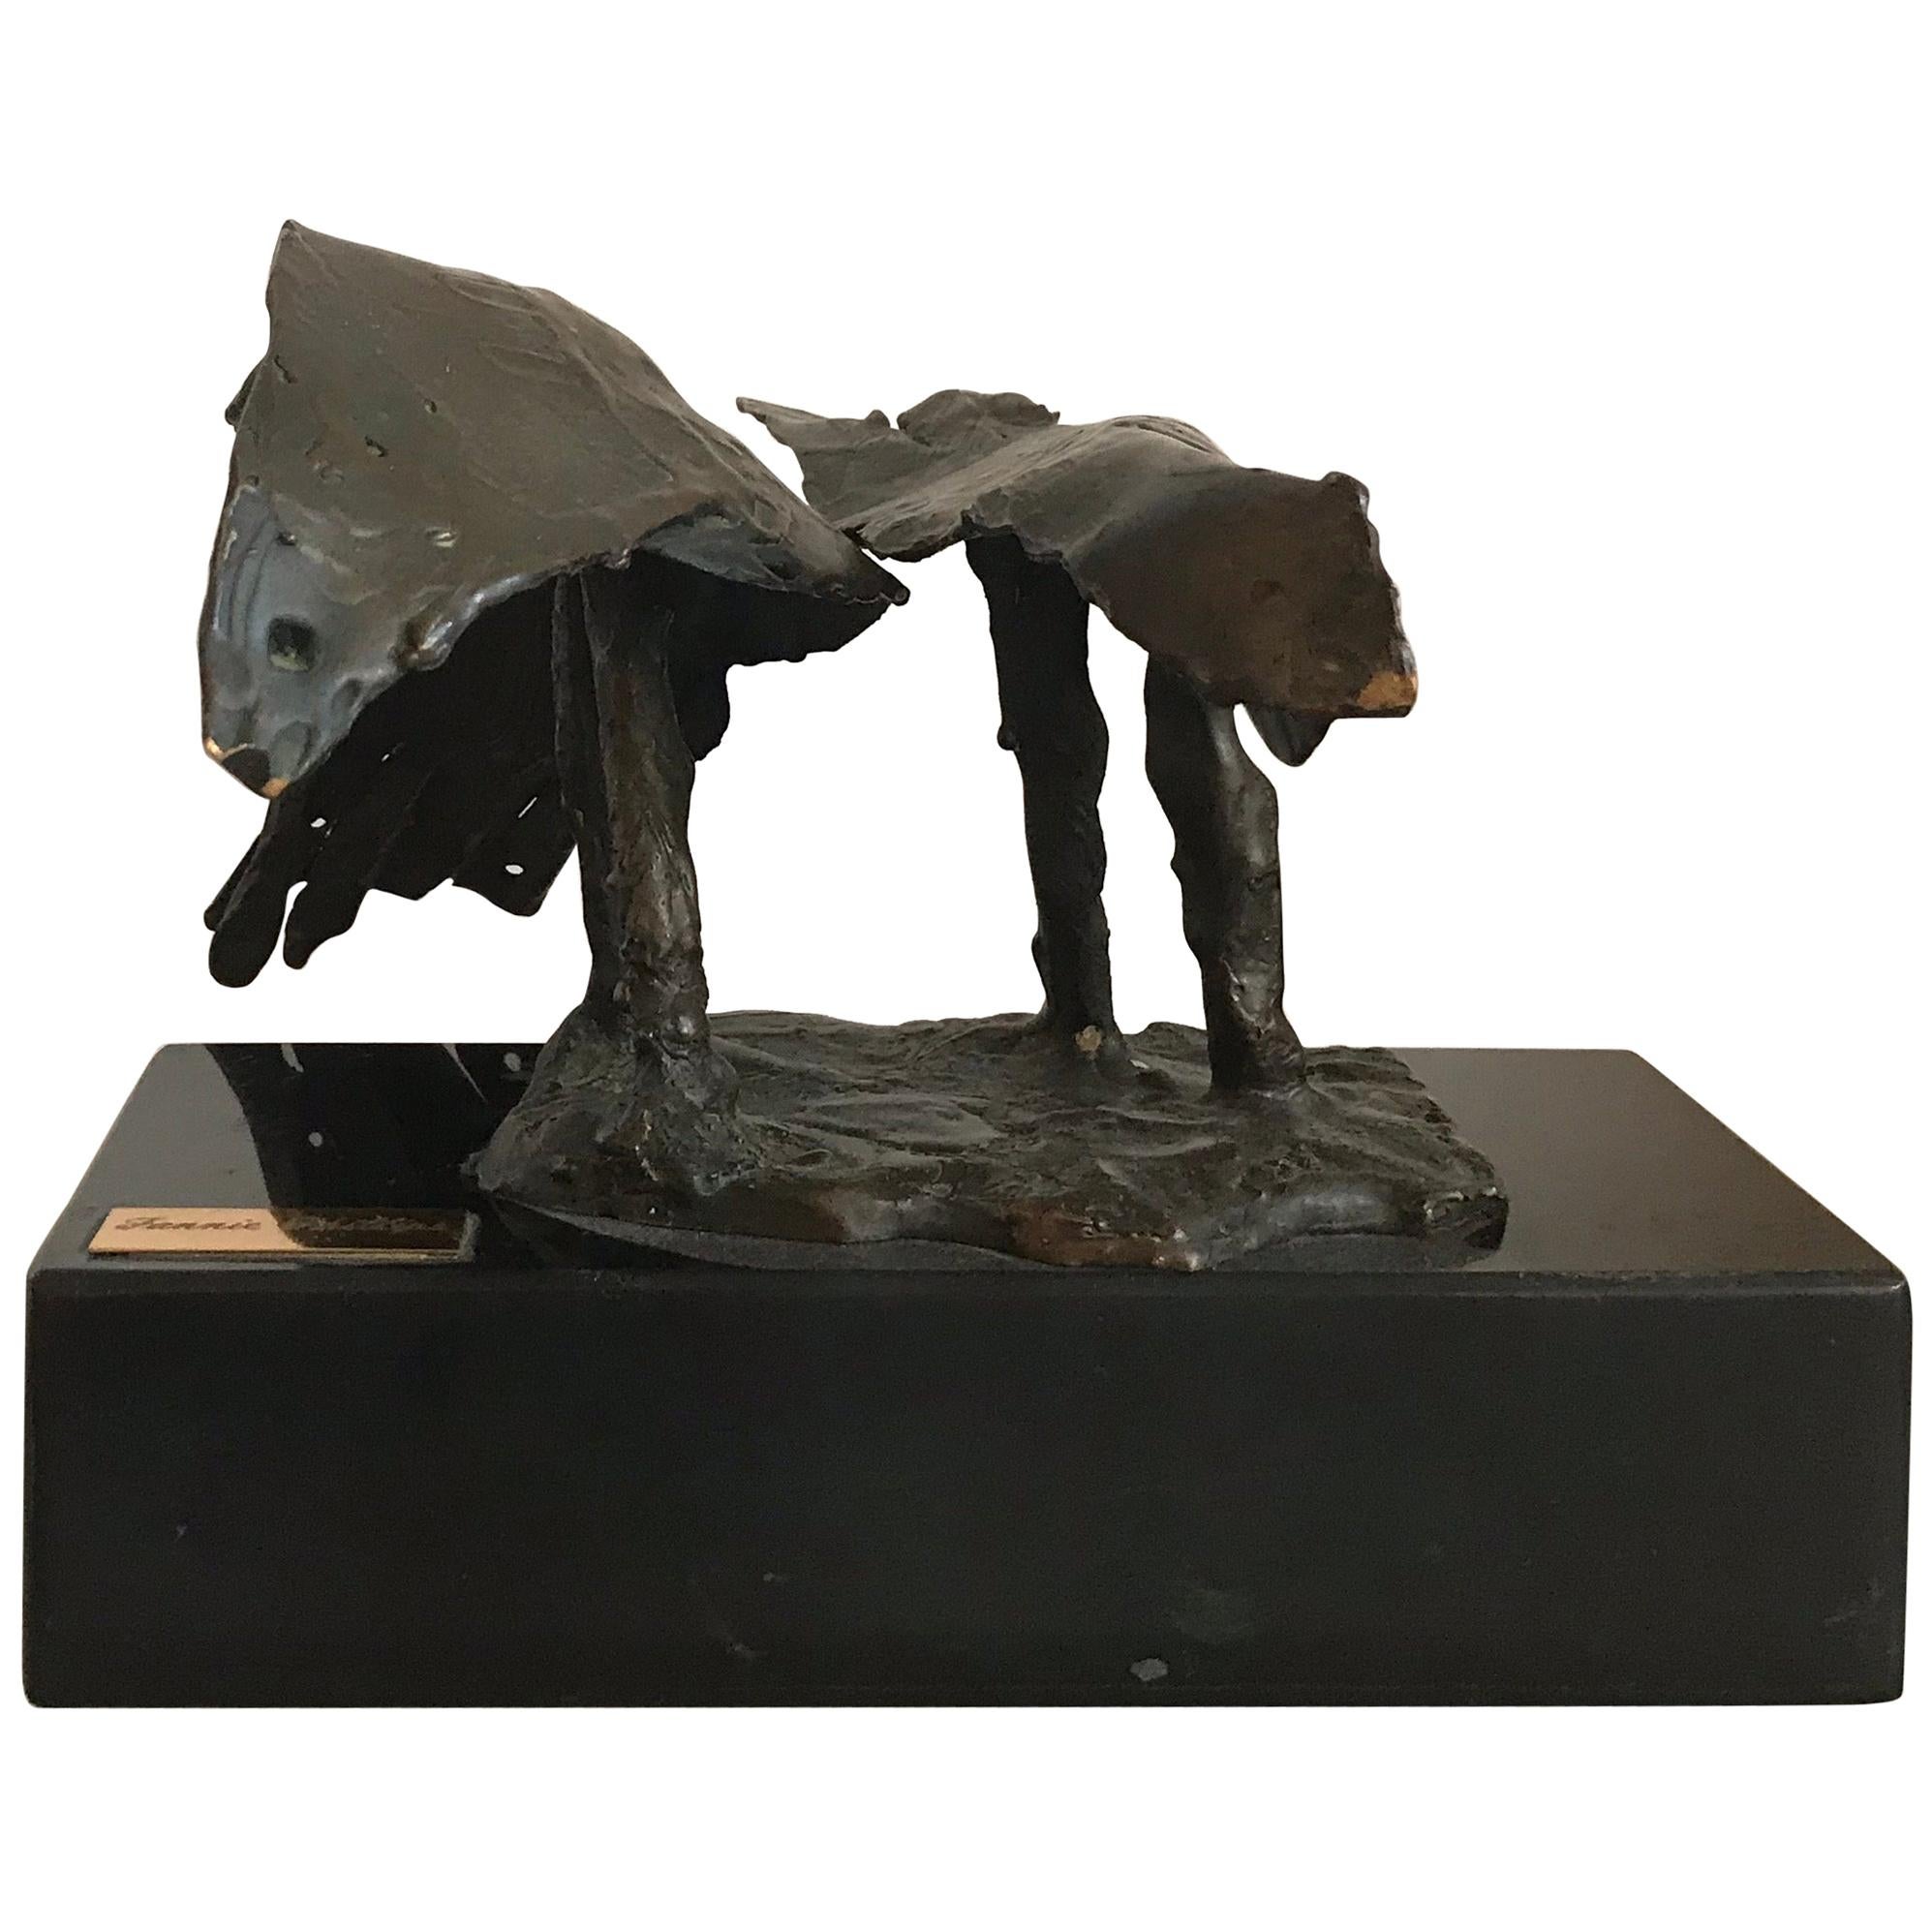 Fannie Phillips Brutalist Style Metal Bird Sculpture